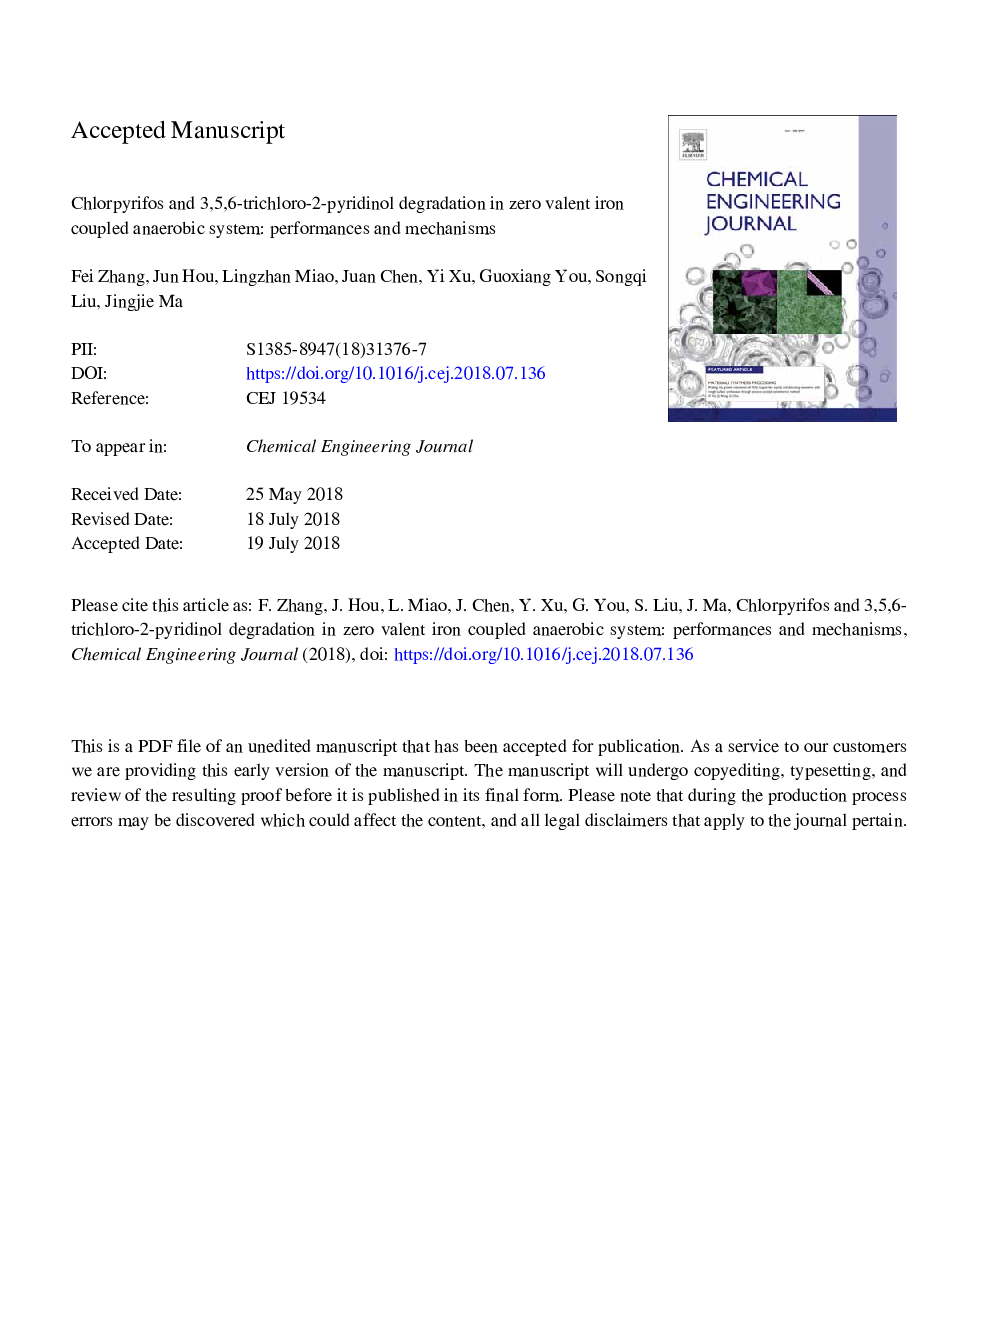 تخریب کلروفیفیوها و 3،5،6-تریکلرو-2-پیریدینول در آهن صفر دلخواه با سیستم بی هوازی همراه: عملکرد و مکانیزم 